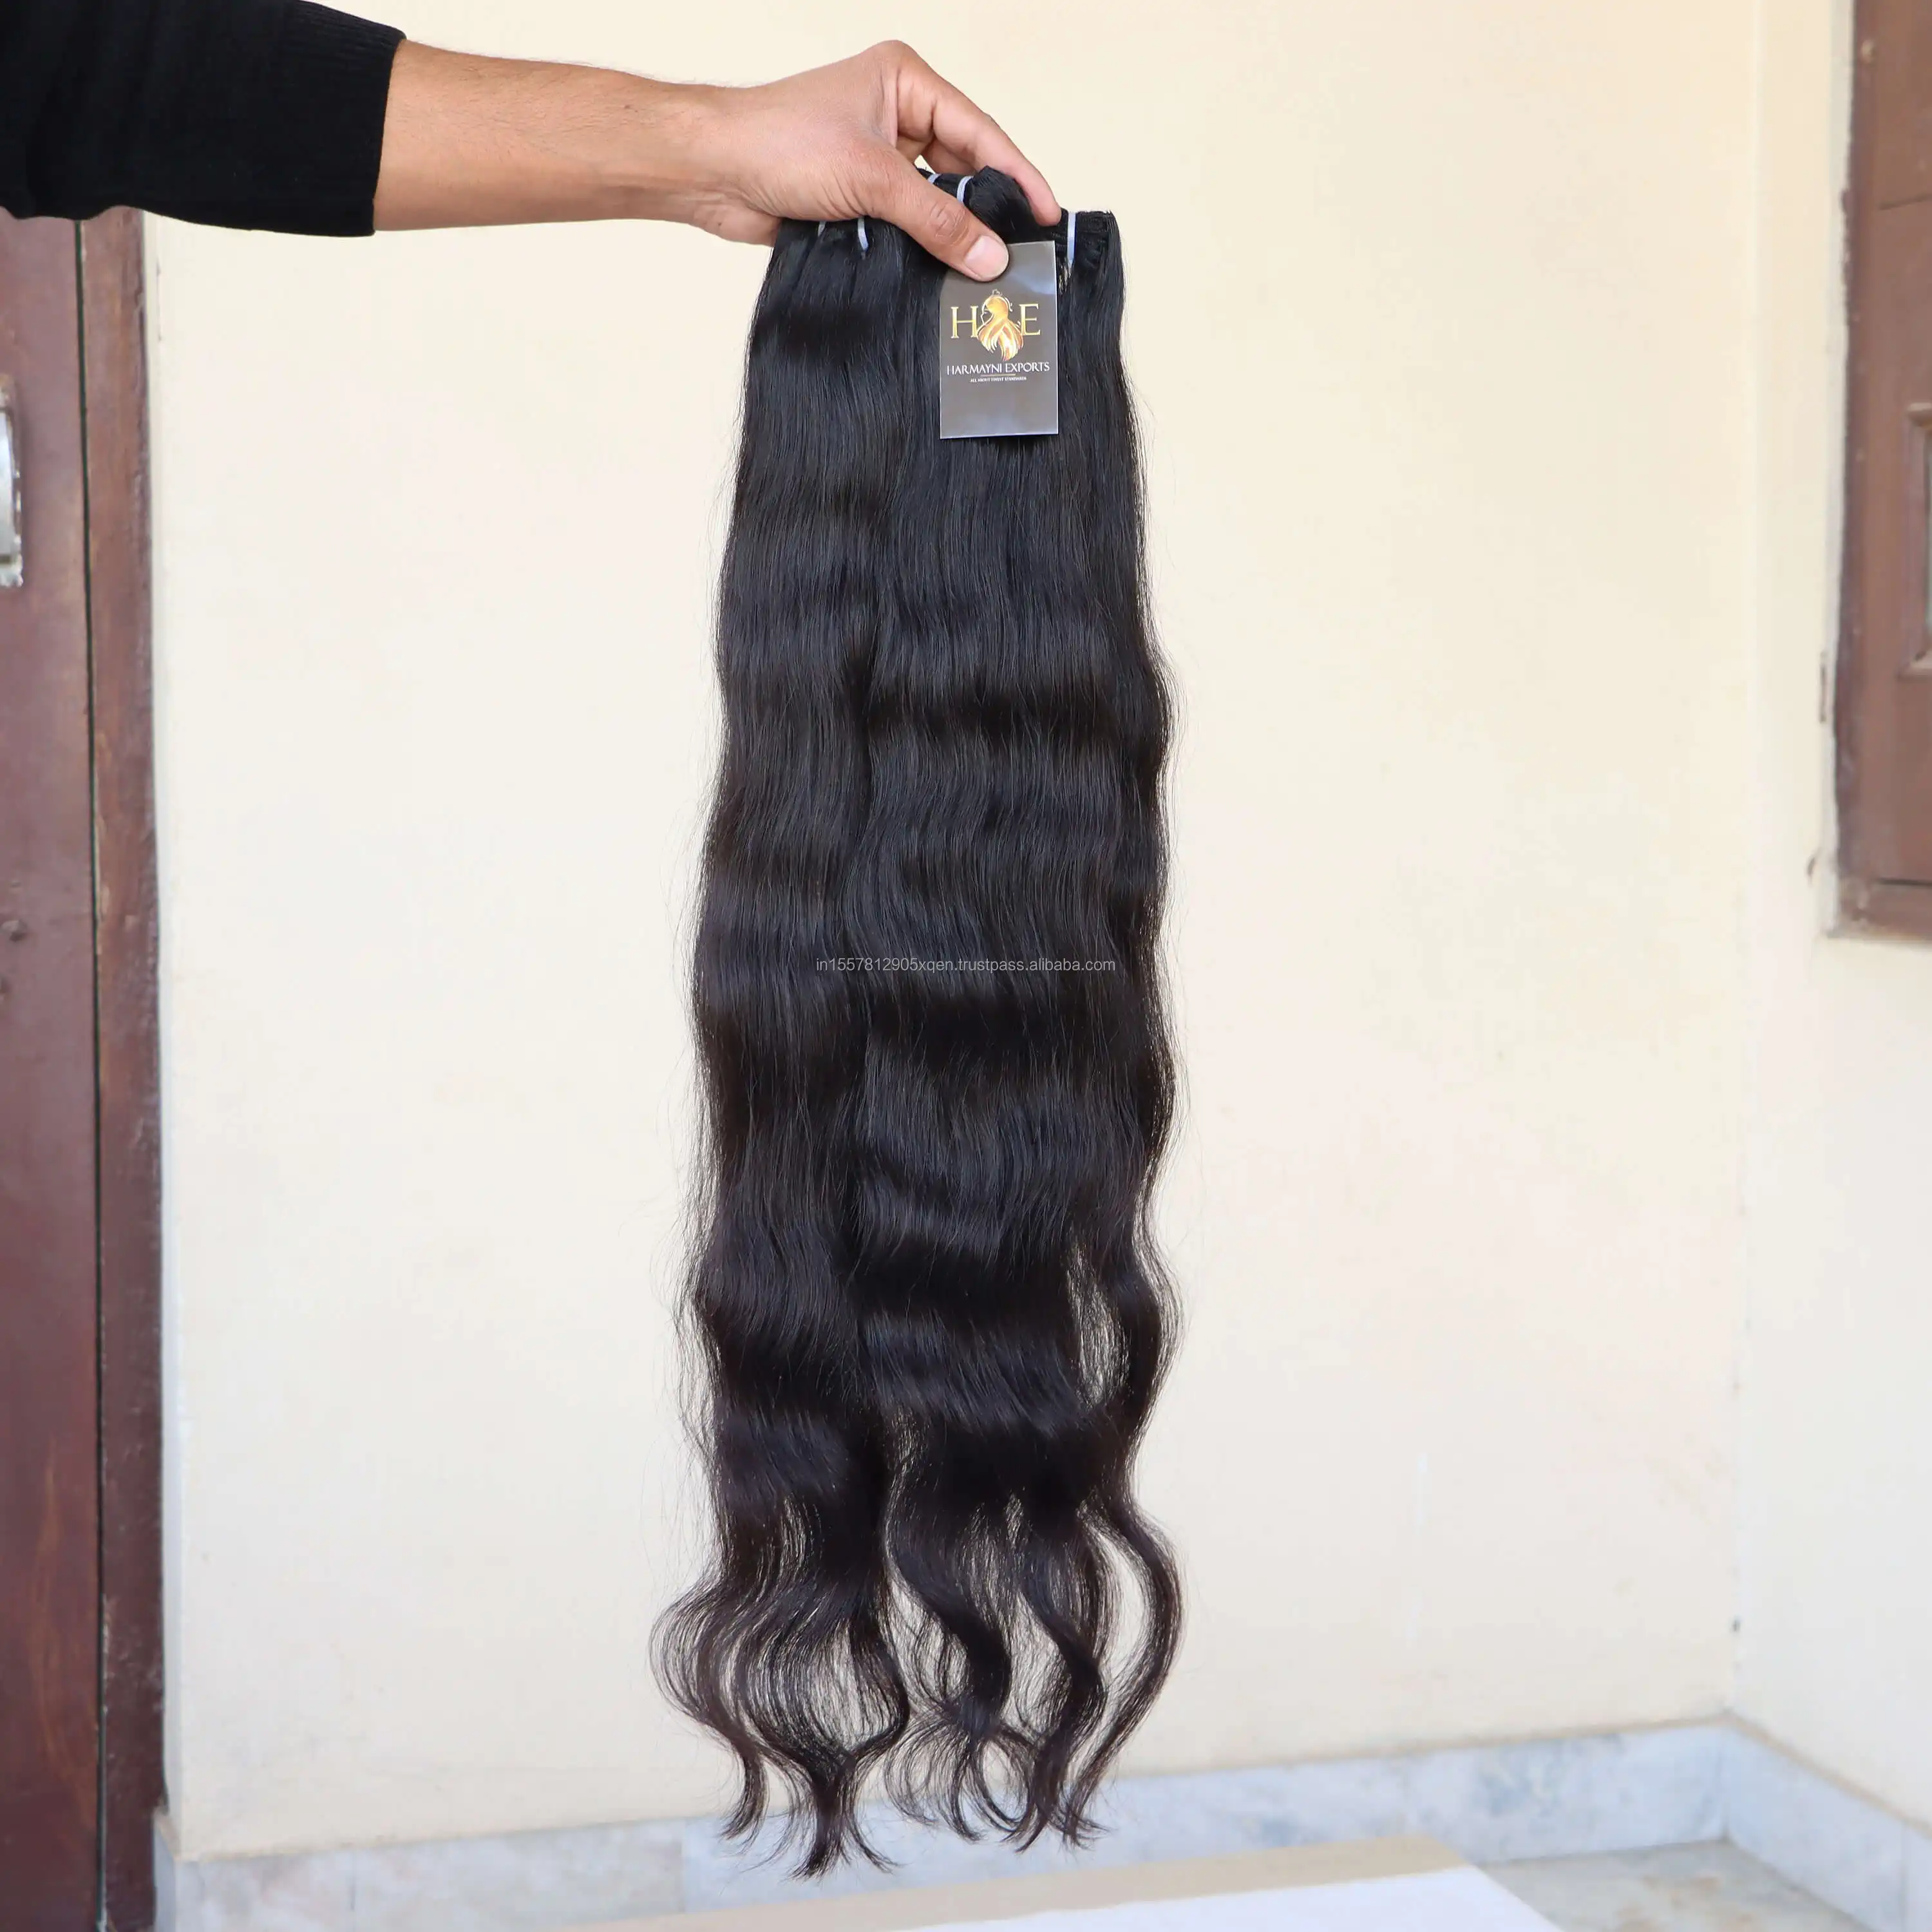 인도 원시 처리되지 않은 처녀 머리 바디 웨이브 머리 직조 번들 도매 원시 인도 사원 인간의 머리 제조 업체